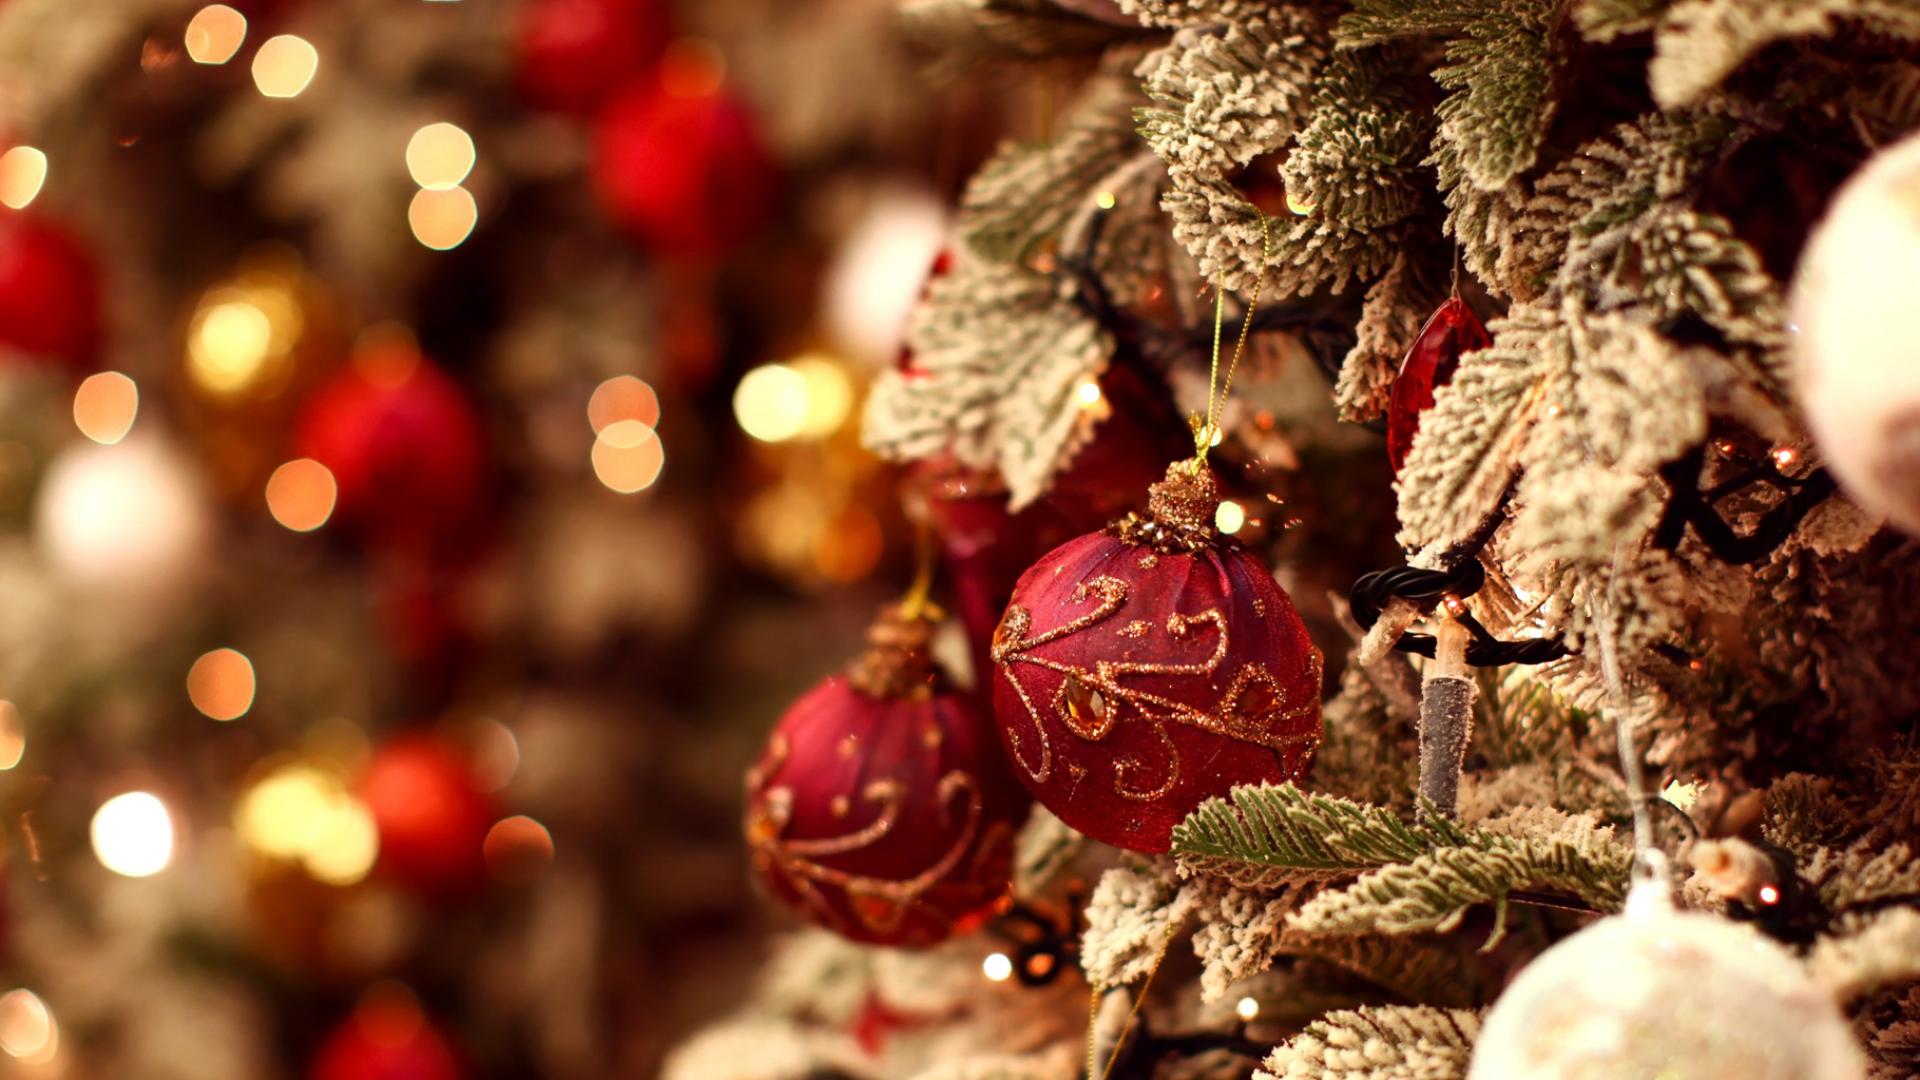 クリスマスの壁紙,クリスマスオーナメント,クリスマスの飾り,クリスマスツリー,クリスマス,伝統